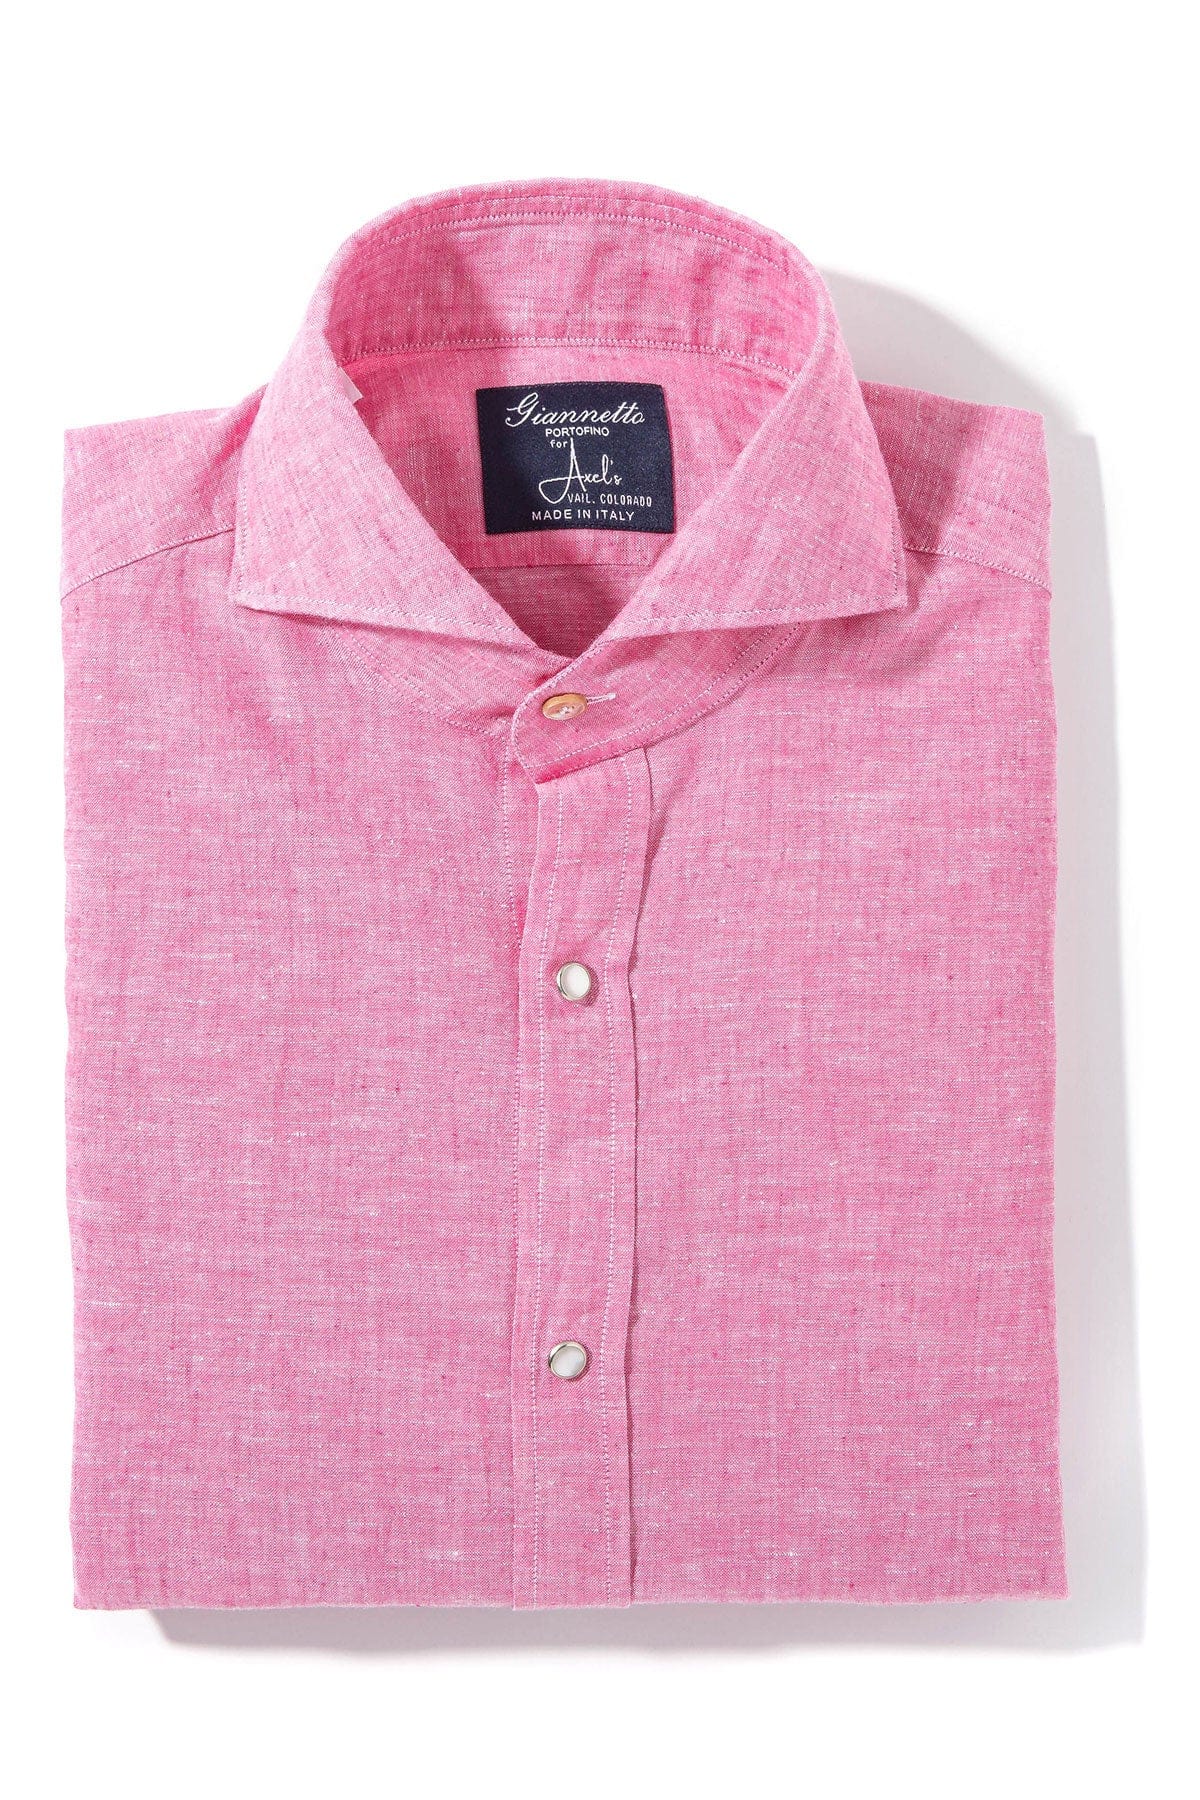 Mach Linen Cotton Shirt in Pink - AXEL'S